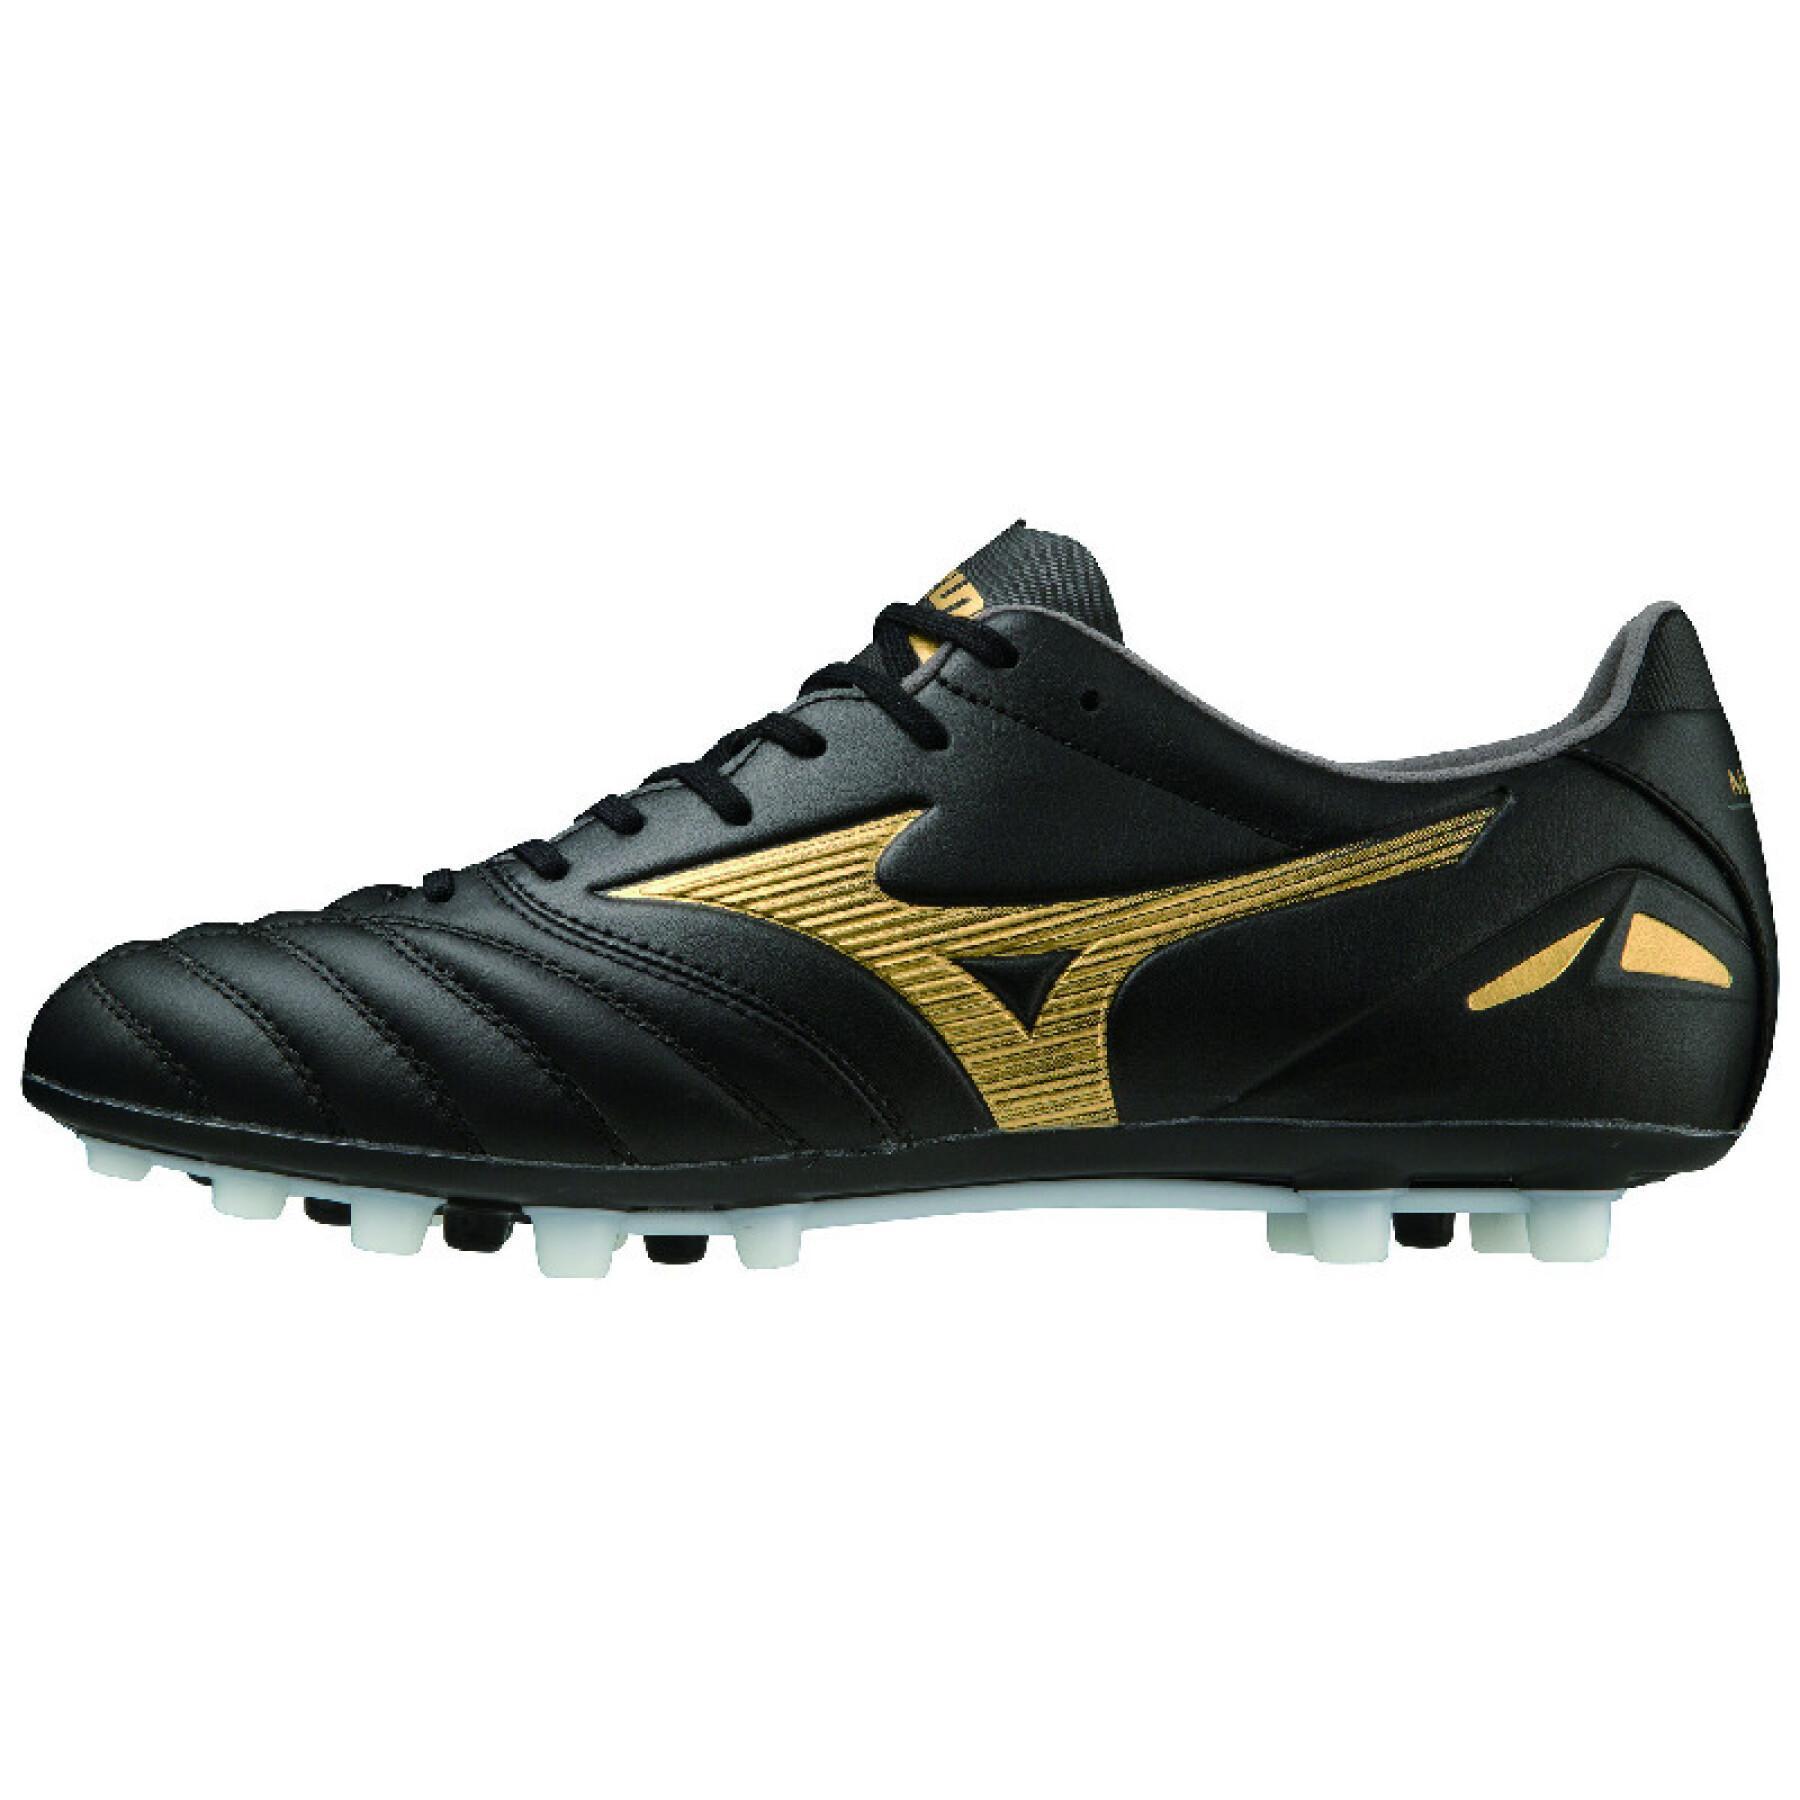 Soccer shoes Mizuno Morelia Neo Pro AG